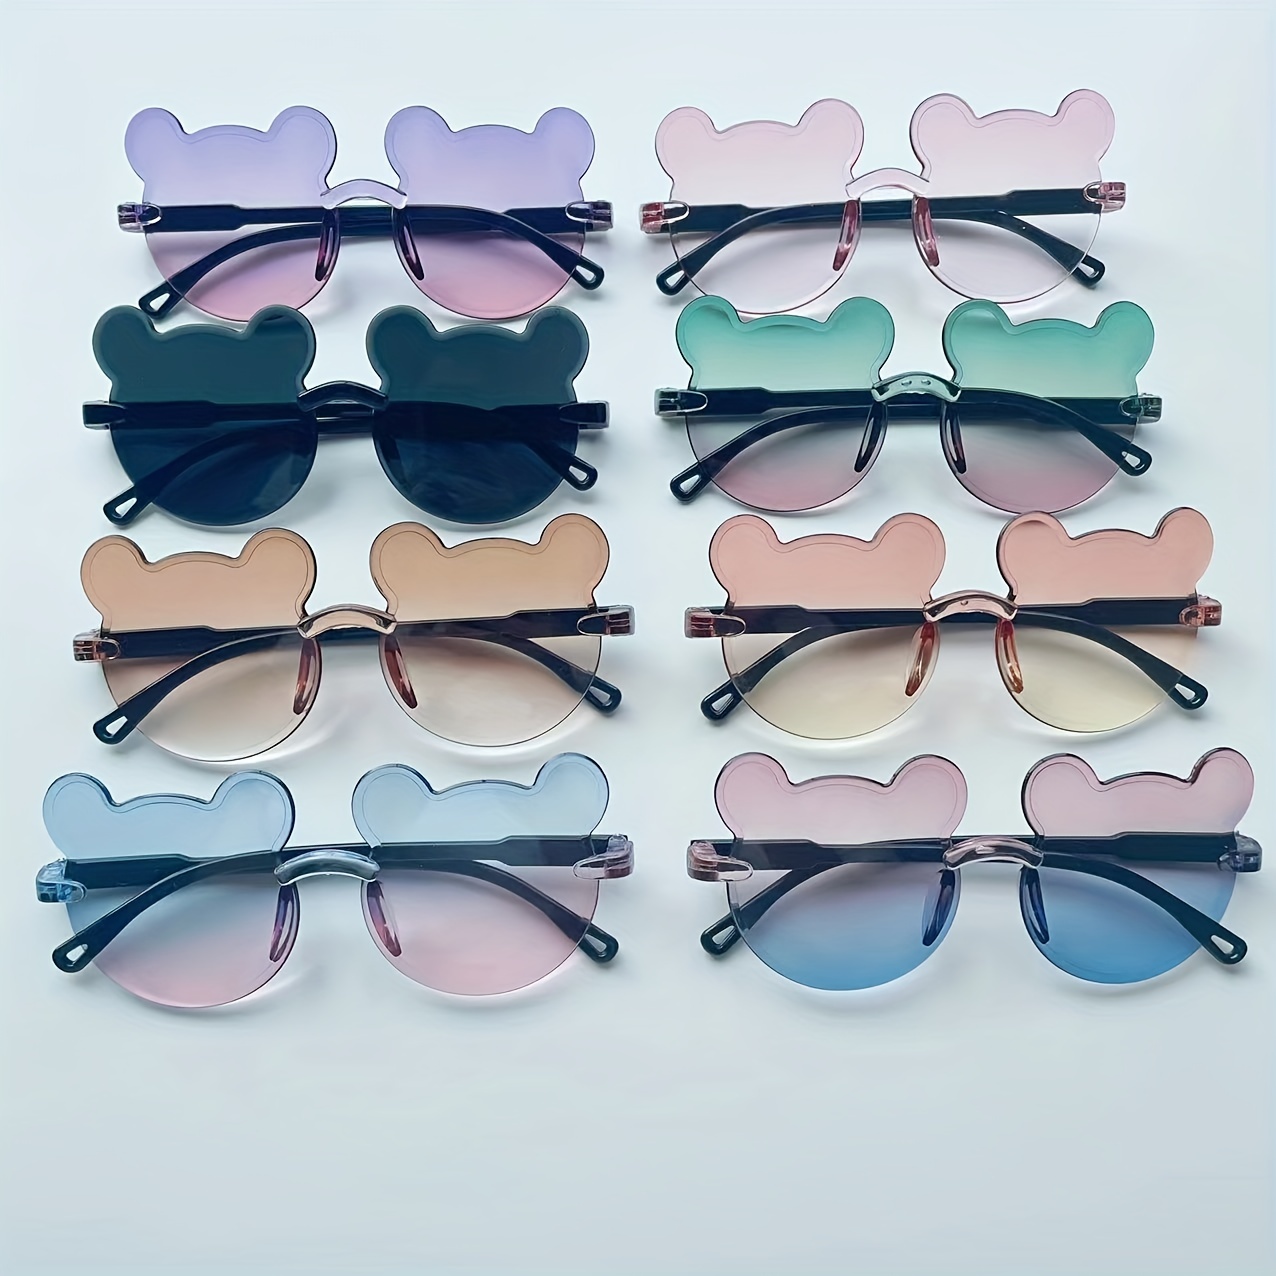 Kinder-Silikon-Sonnenbrille